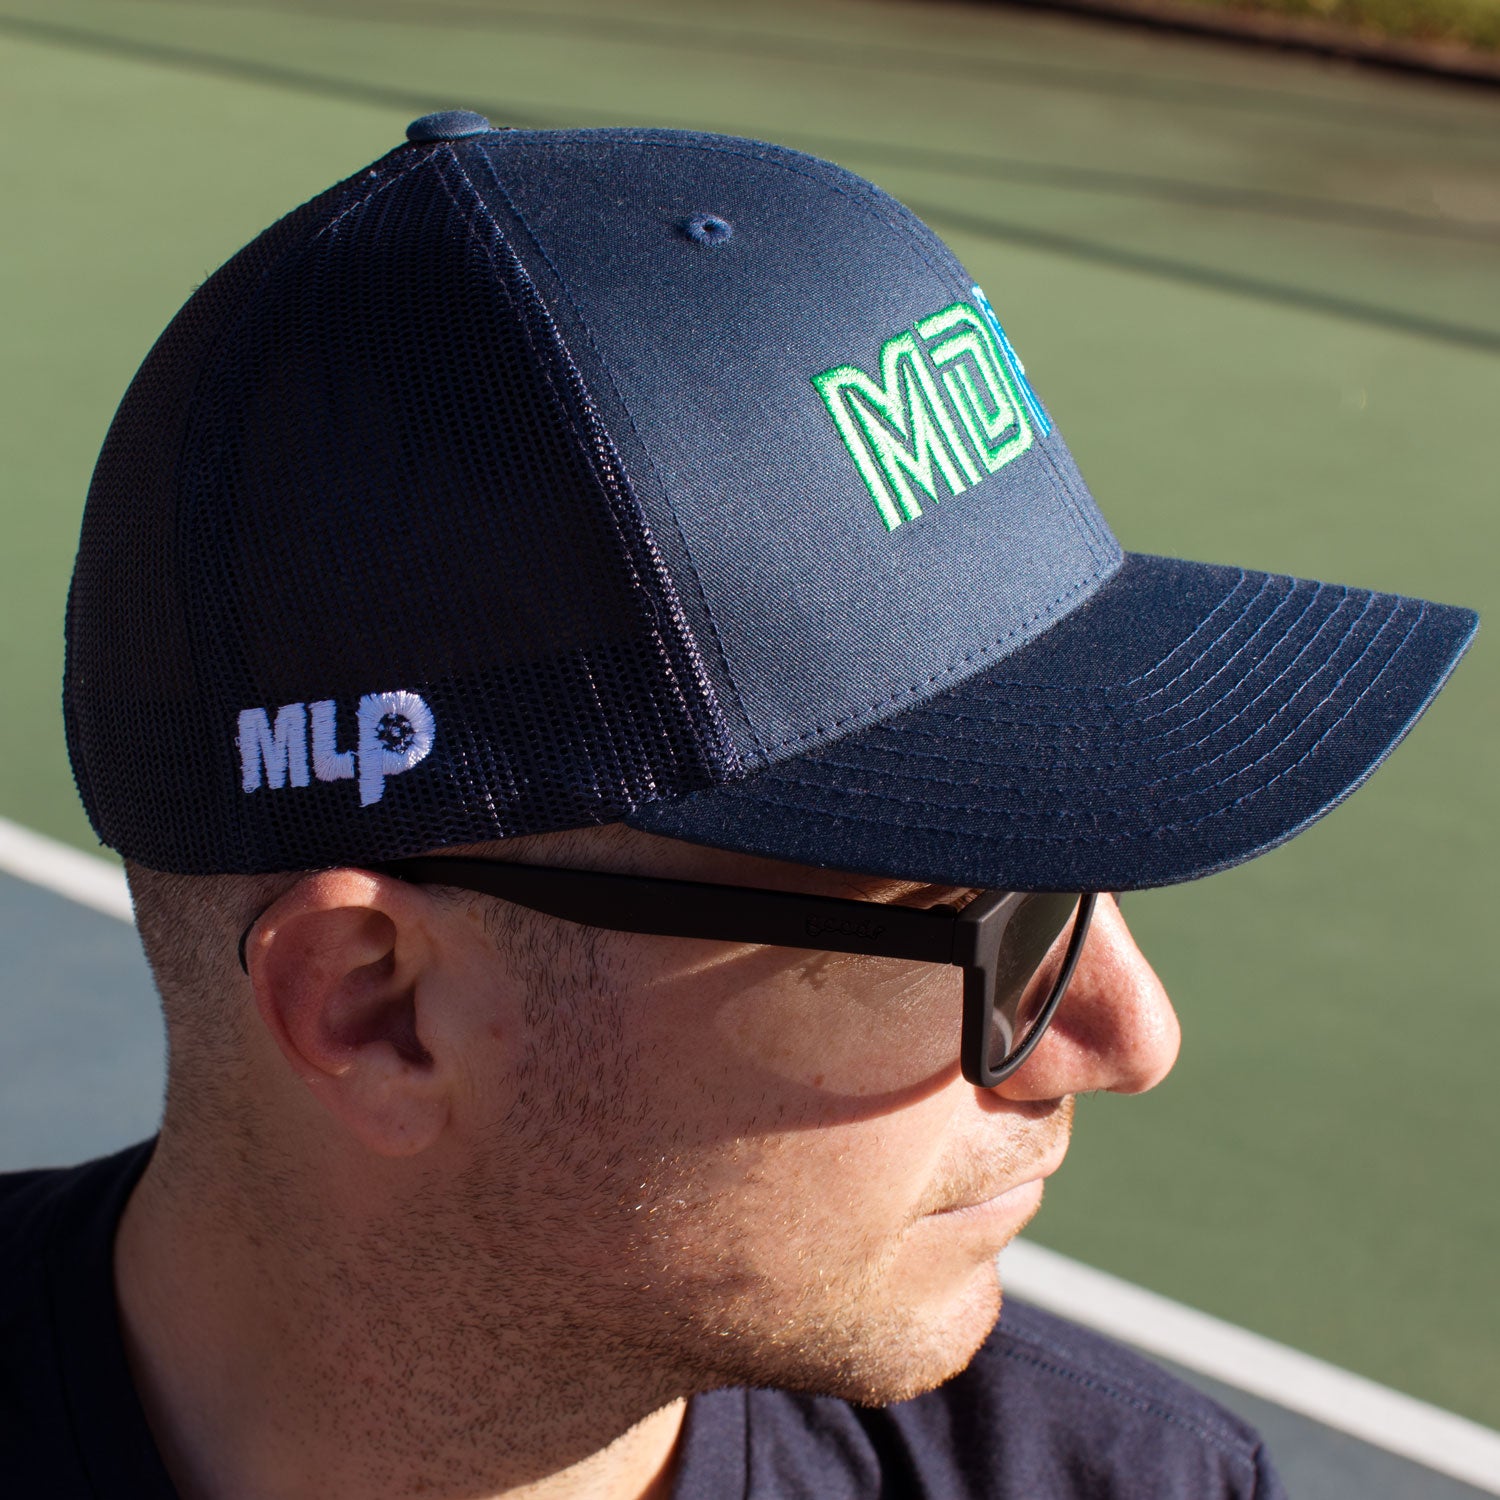 MDPC Navy Trucker Hat